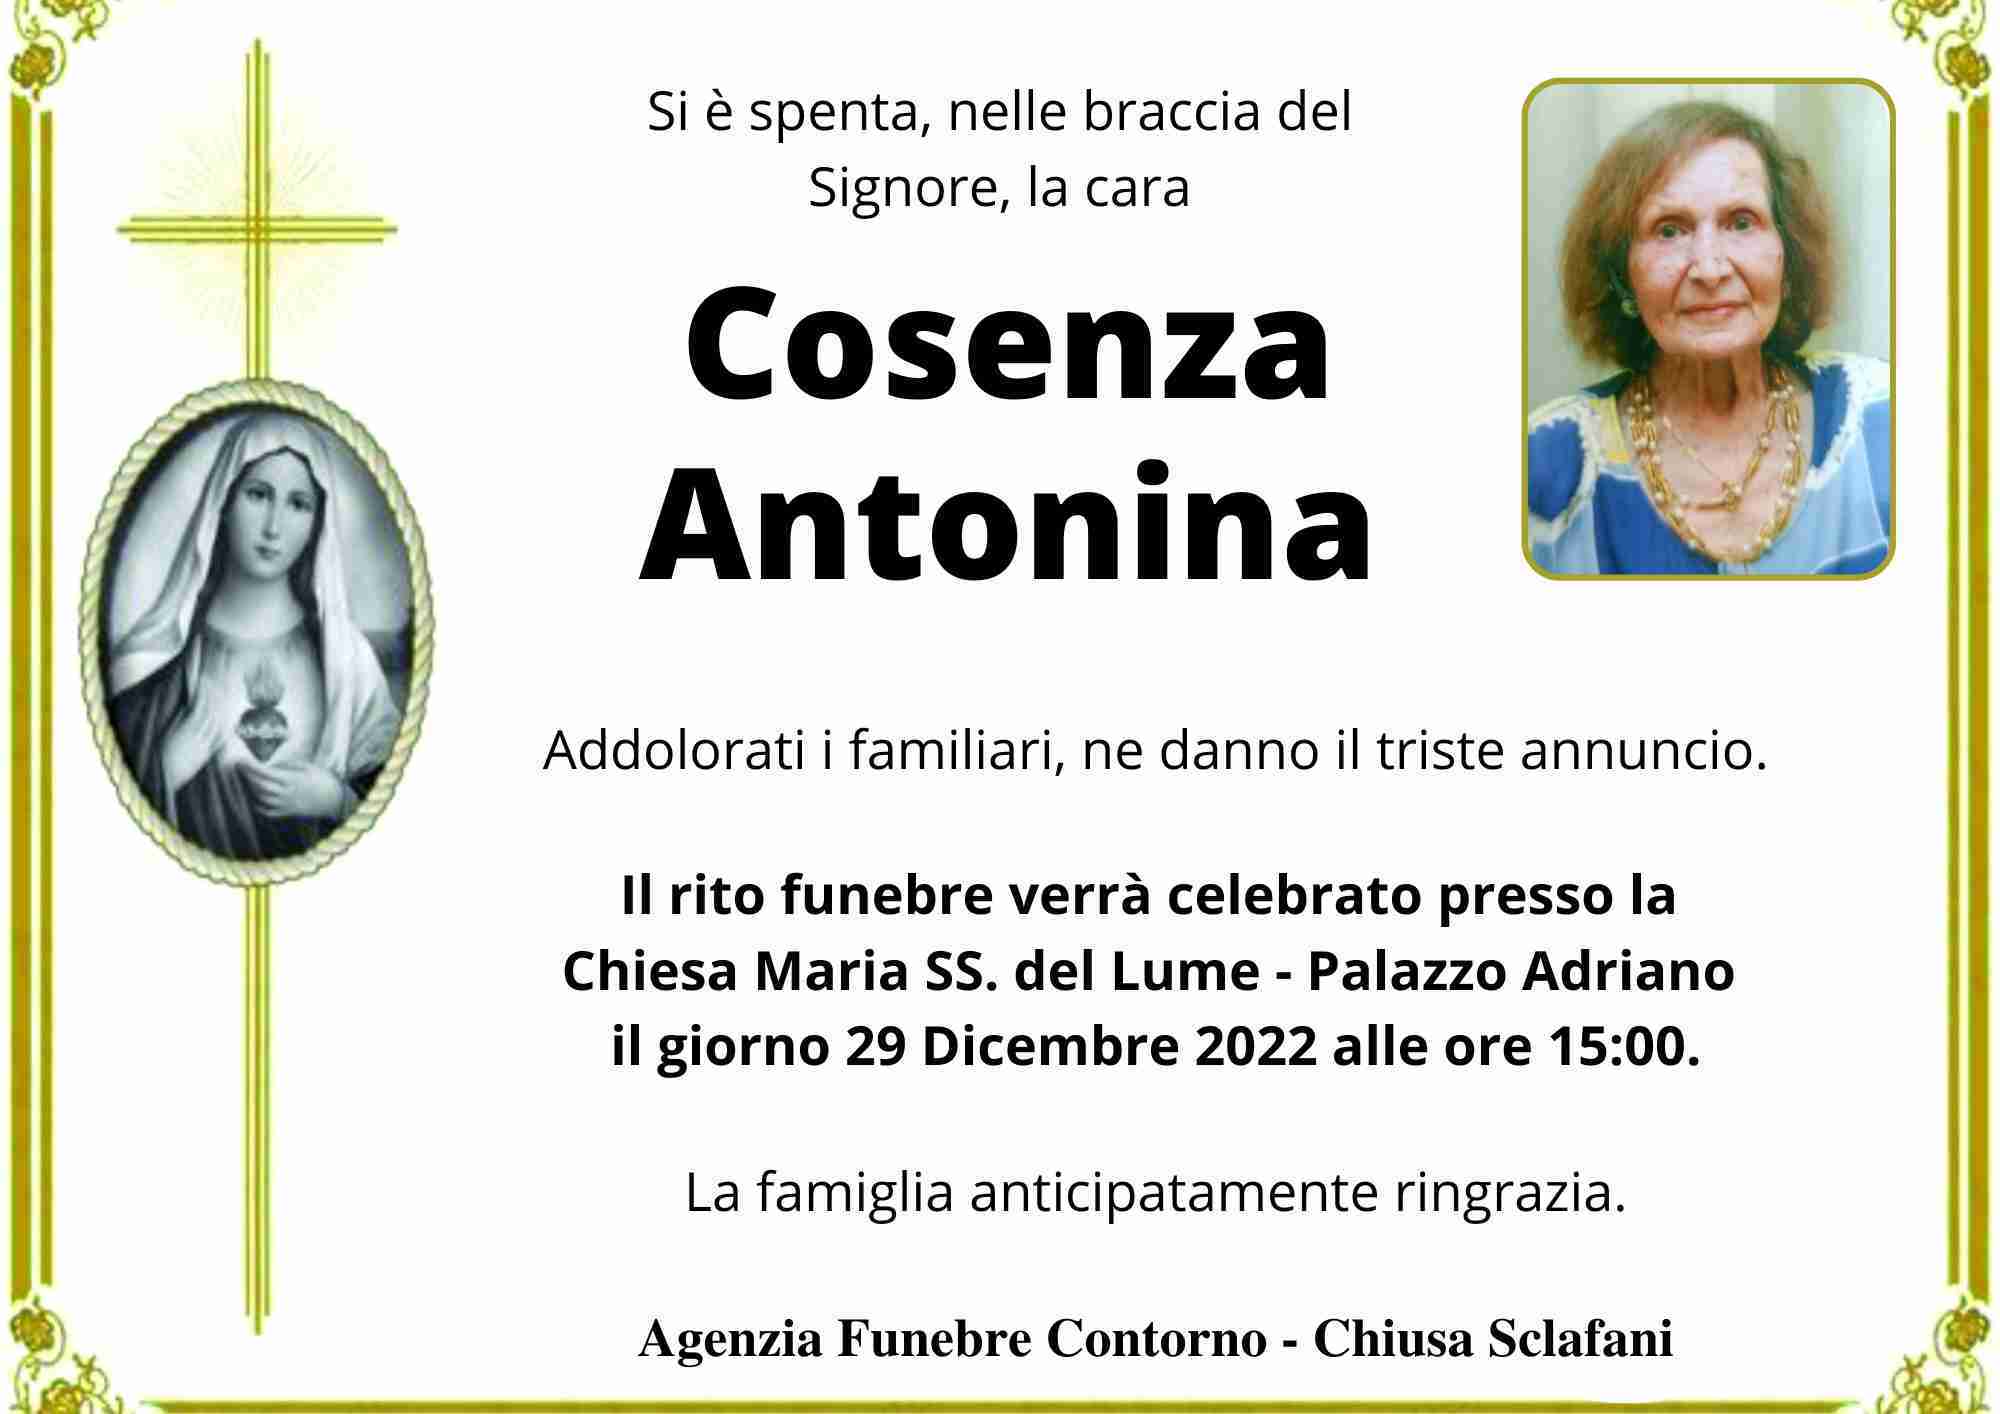 Antonina Cosenza